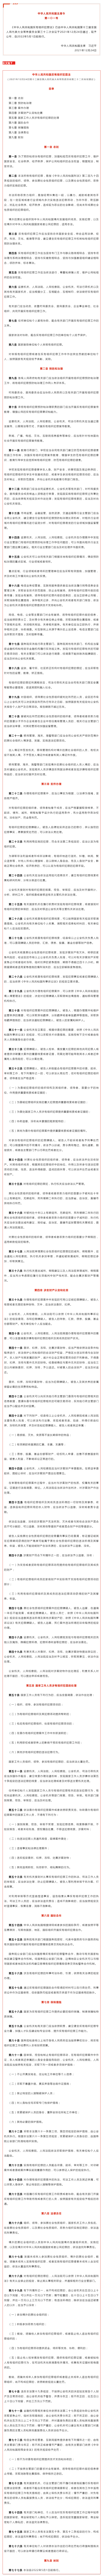 《中华人民共和国反有组织犯罪法》公布（附全文）.png